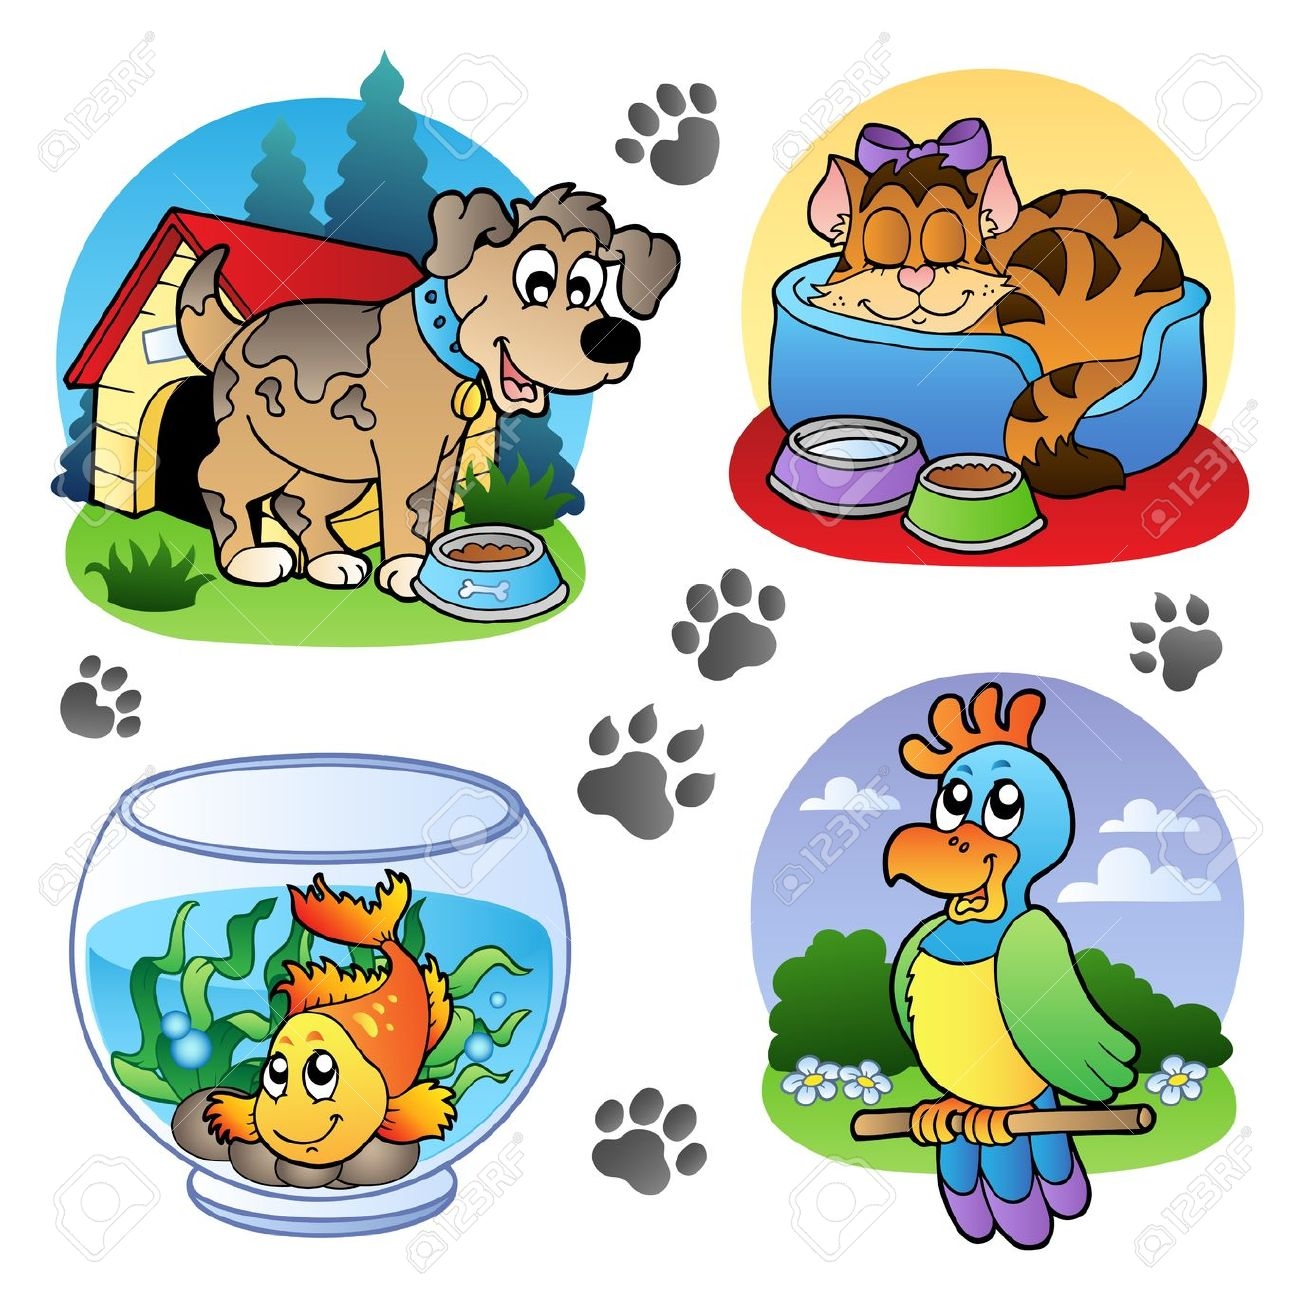 pet bowl: Various pets images